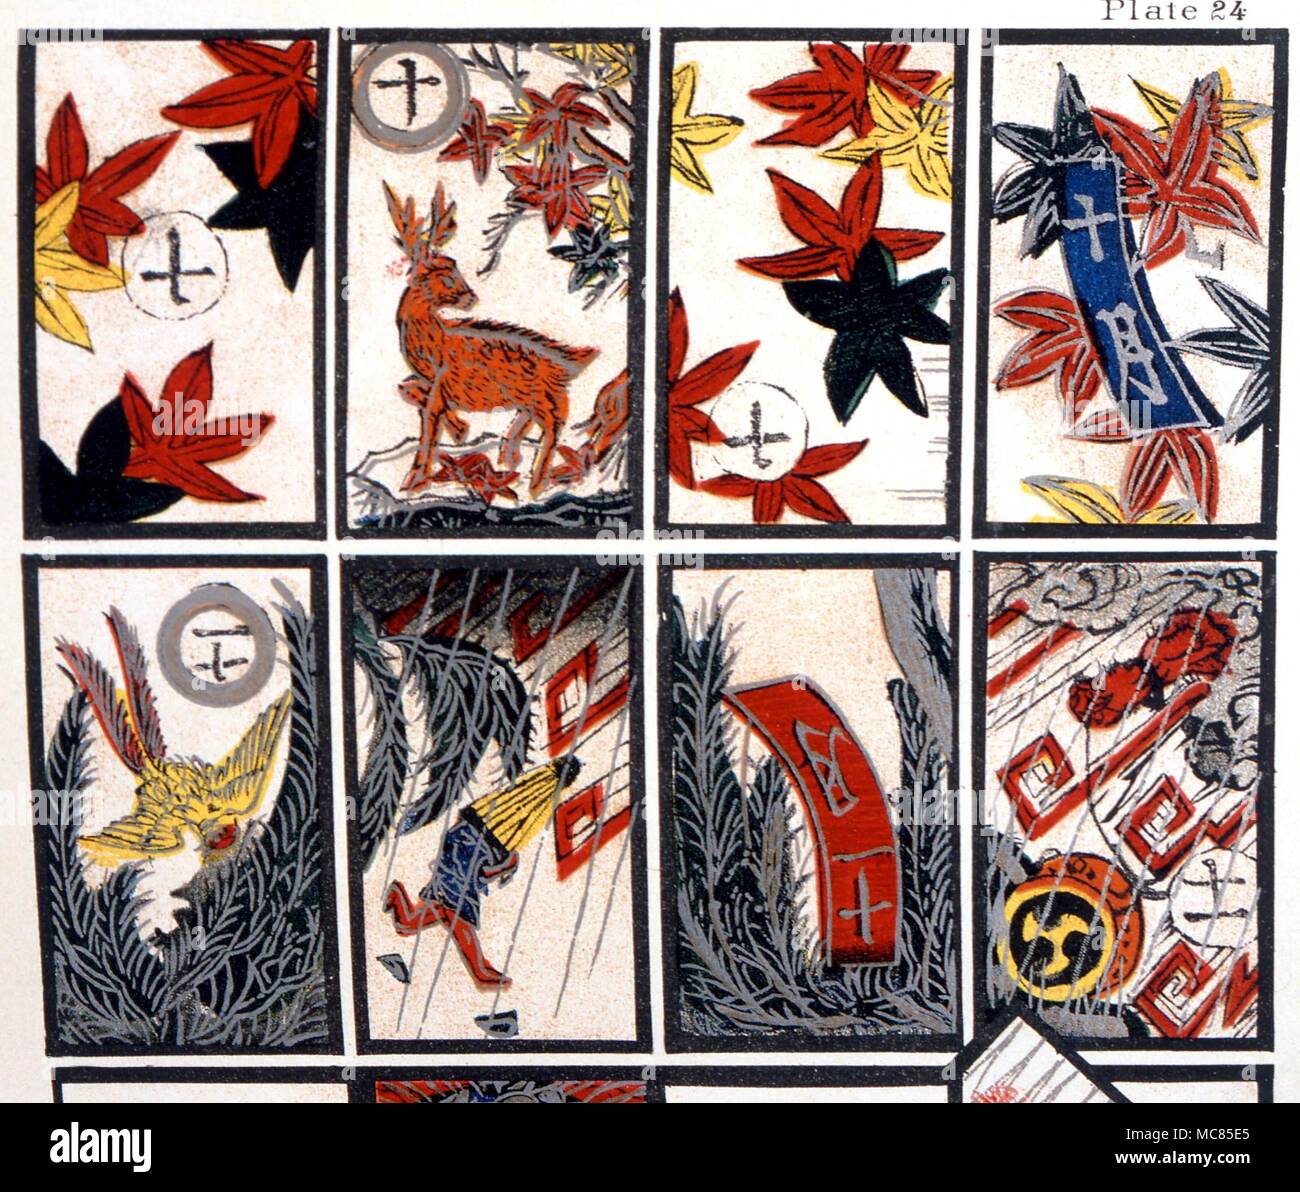 Cartomancy. Japanische Karten spielen, jede repräsentiert eine Woche des Jahres. Serie von lithographischen Karten an den Tarot Tradition, von J, K, Van Rensselaer' des Teufels Bilderbücher 1892. Stockfoto